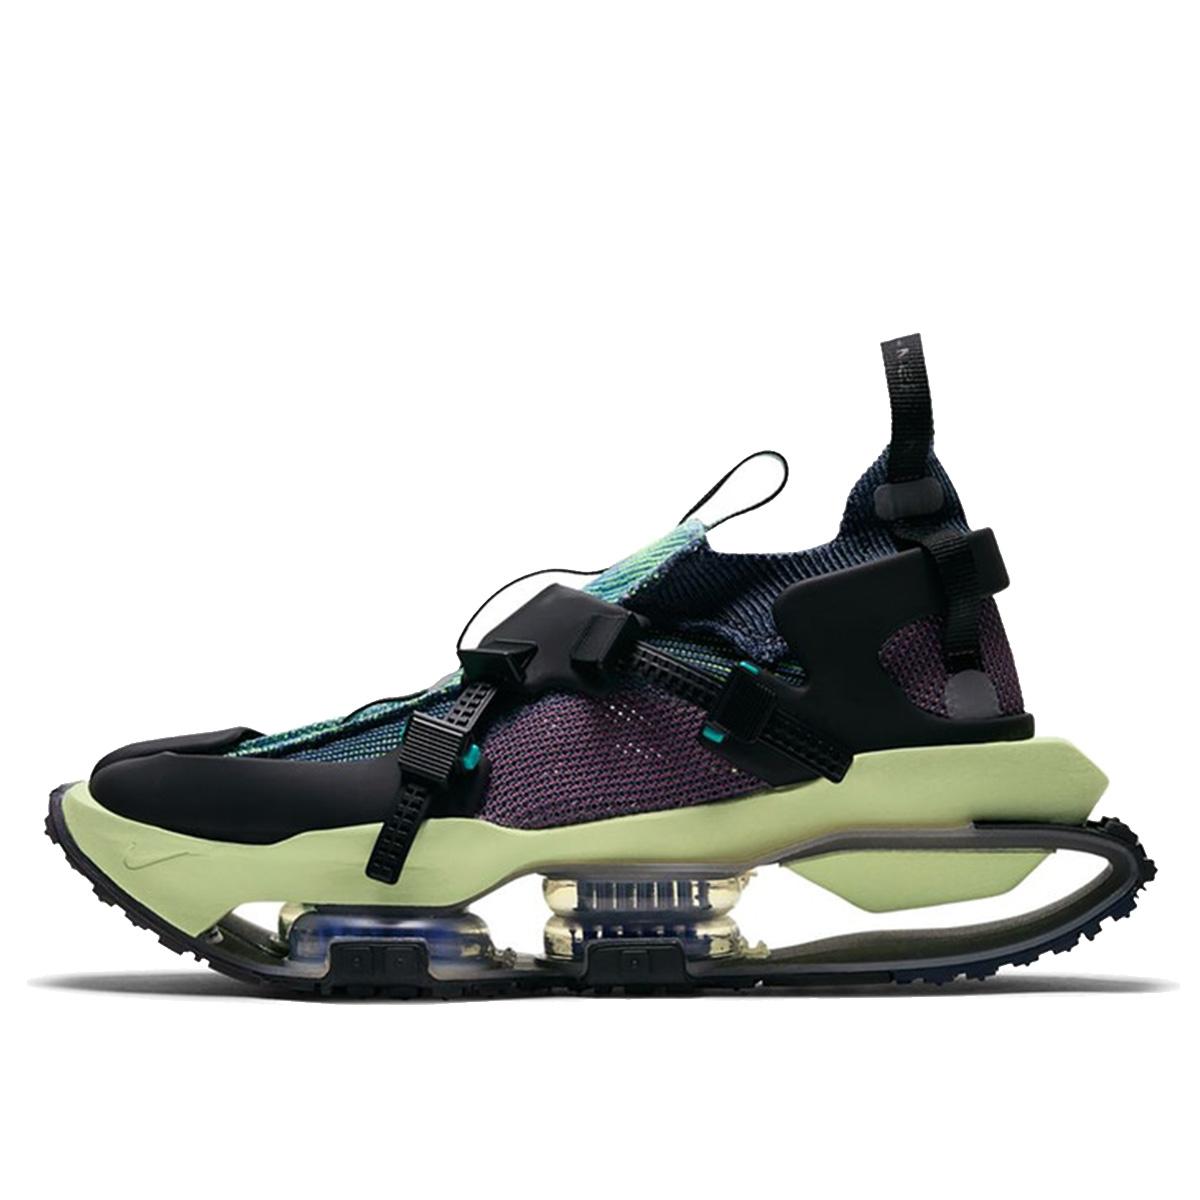 Nike ISPA Road Warrior Clear Jade (2020 